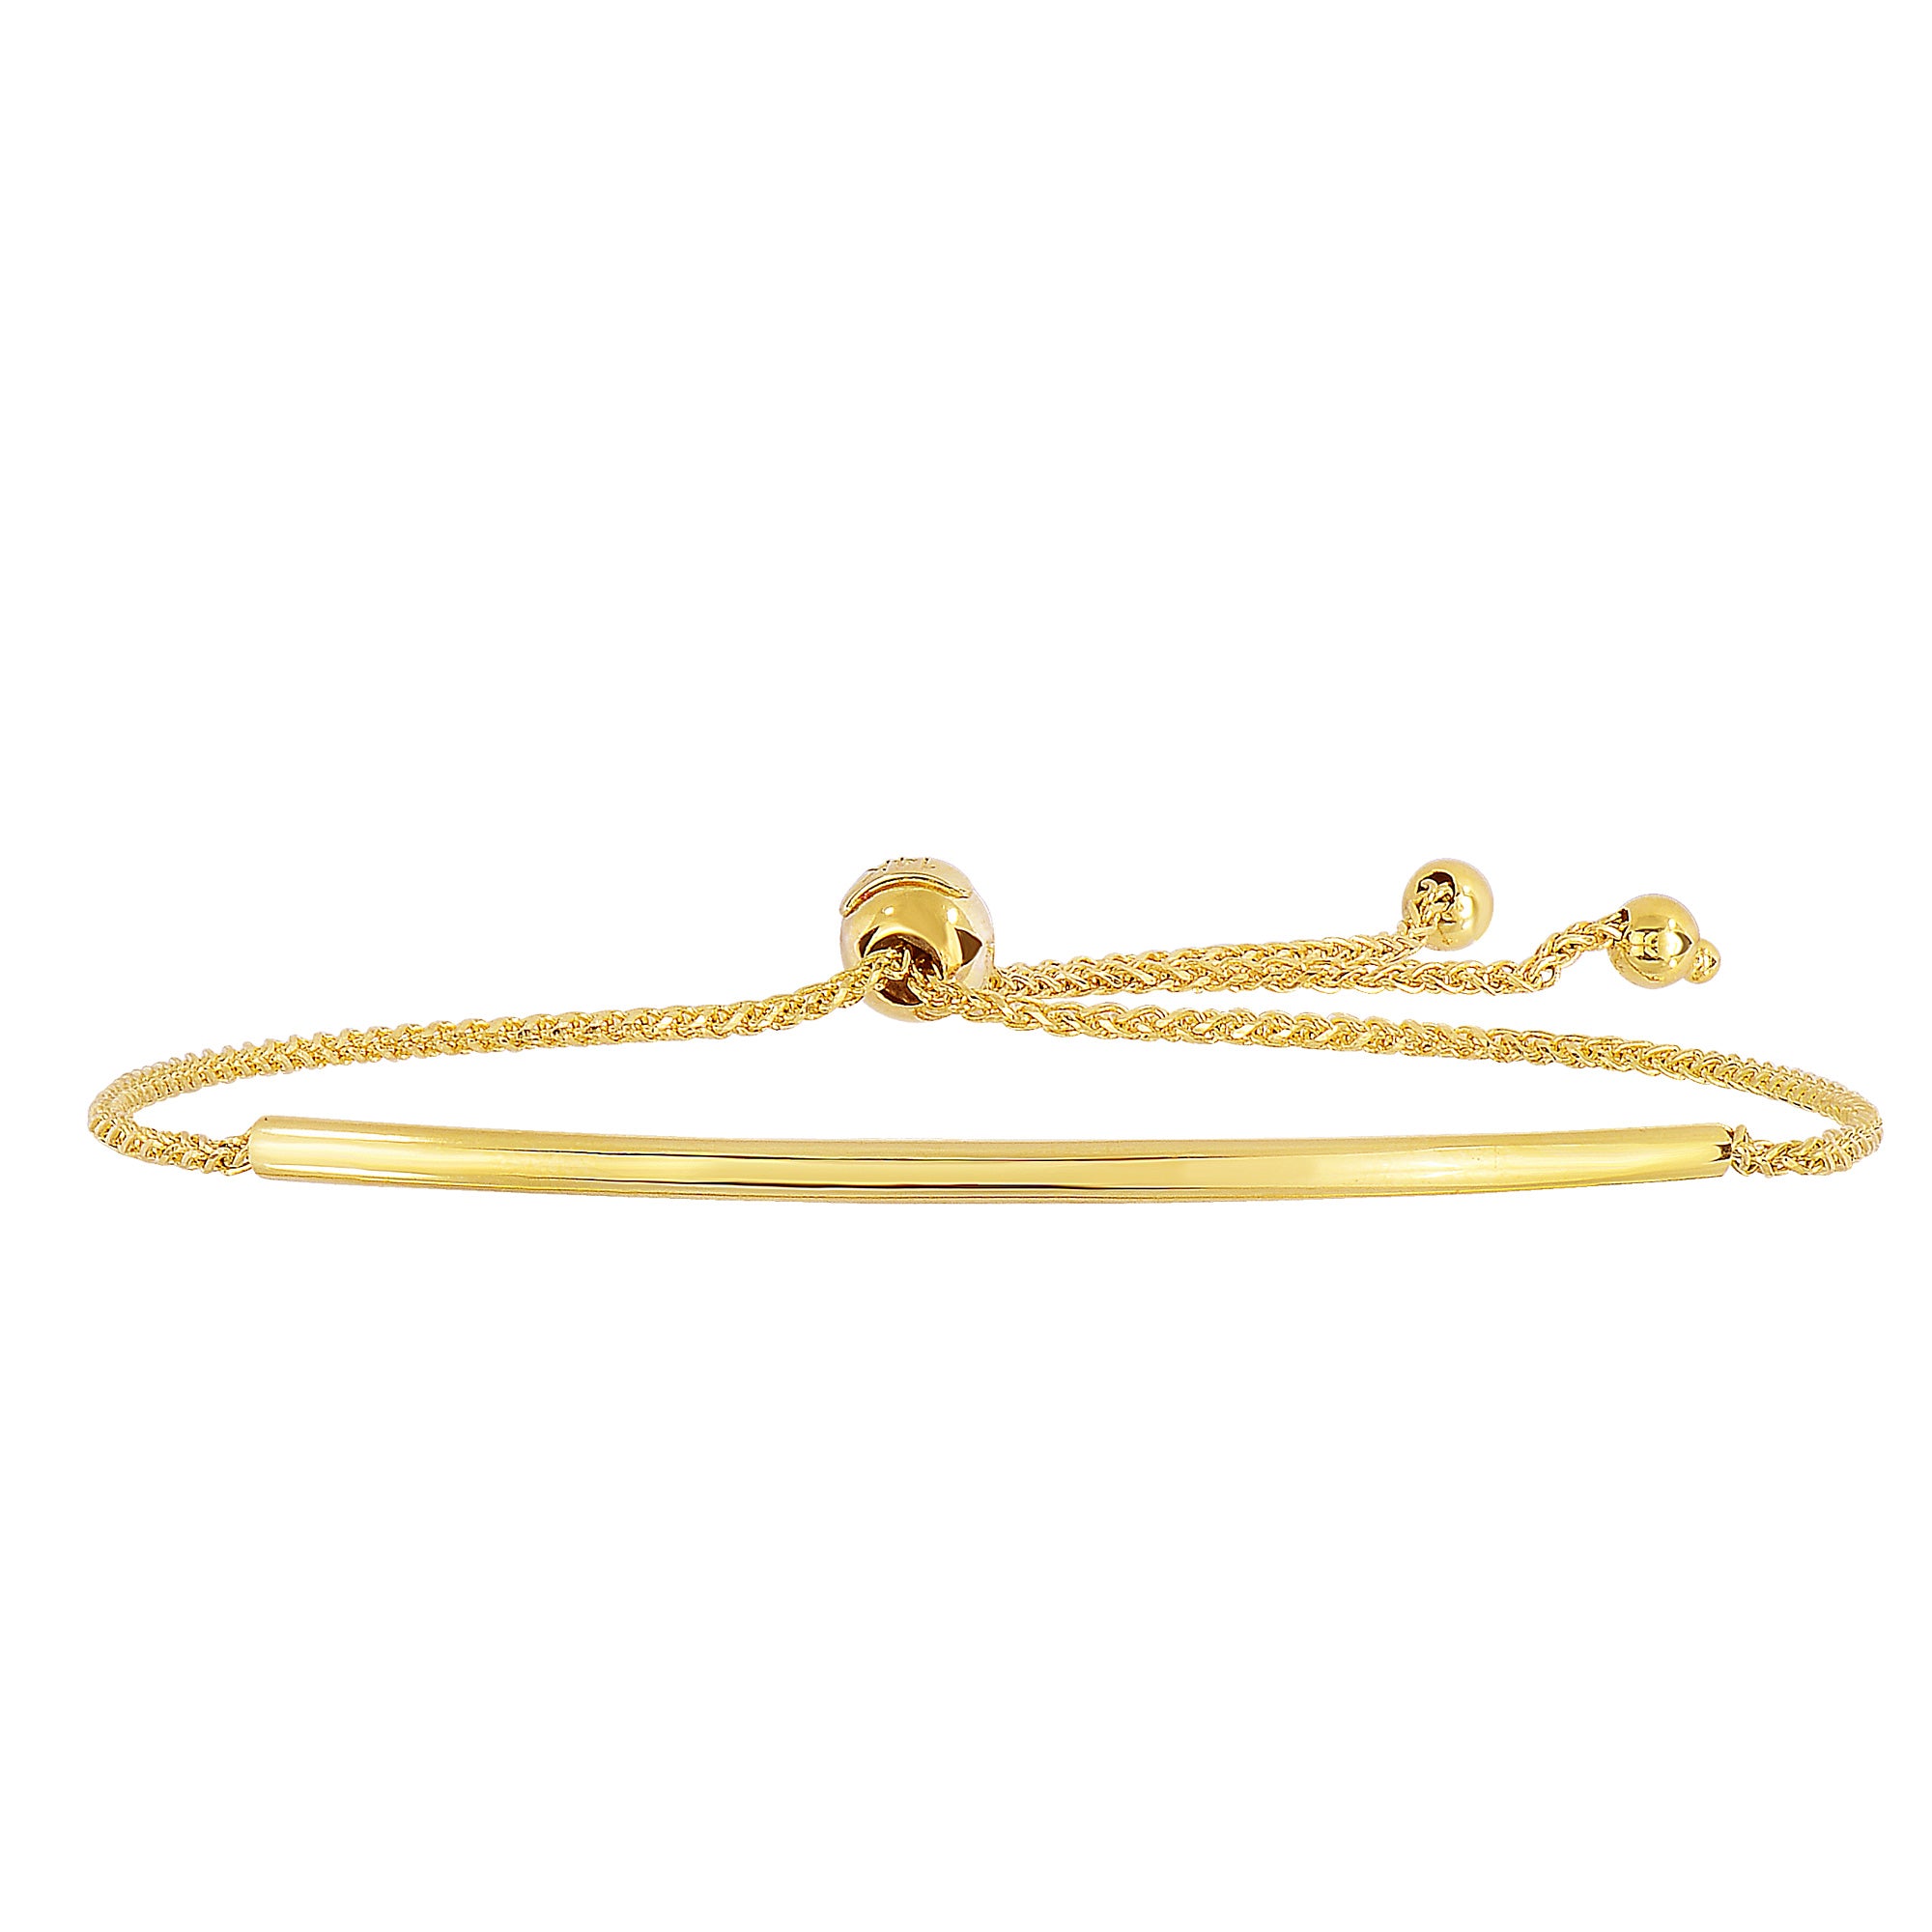 14K gult guld kurvstång diamantslipad vetekedja Justerbart armband med justerbart kullås, 9,25" fina designersmycken för män och kvinnor